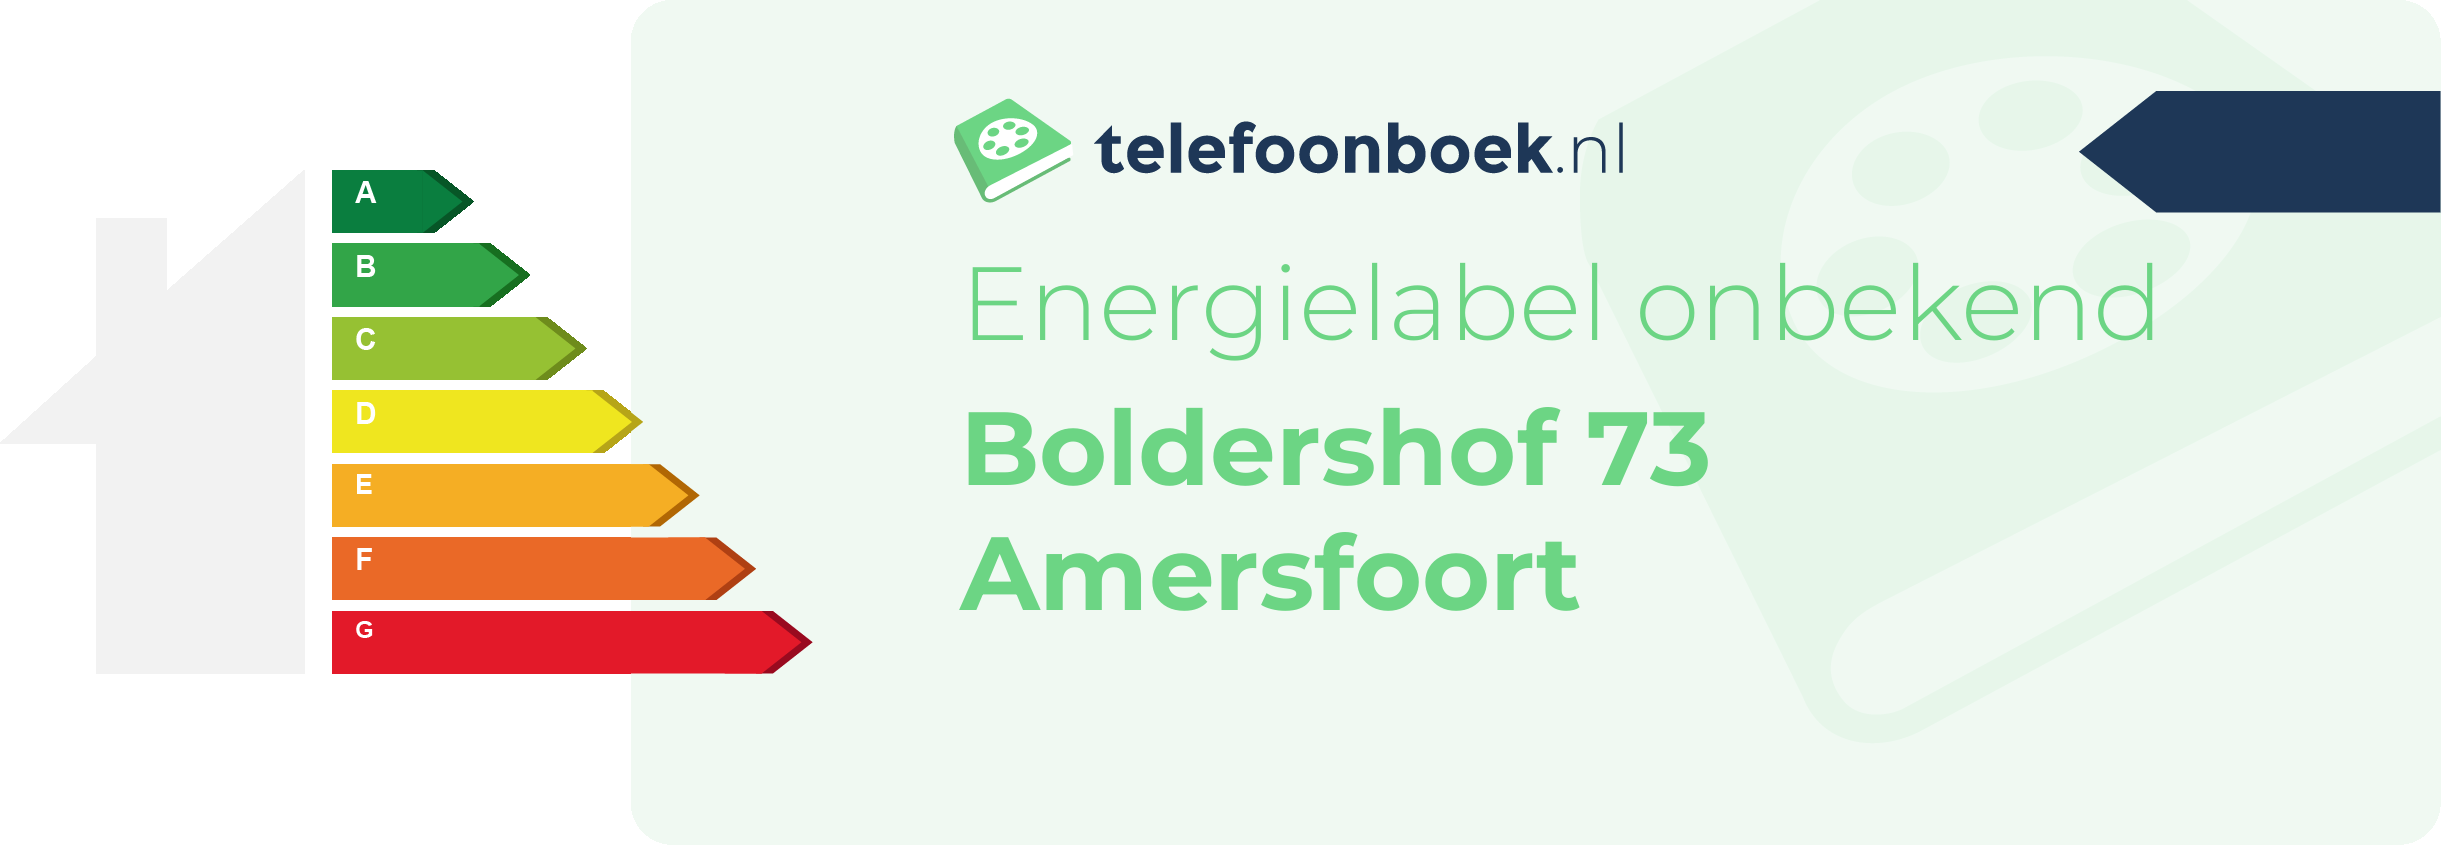 Energielabel Boldershof 73 Amersfoort